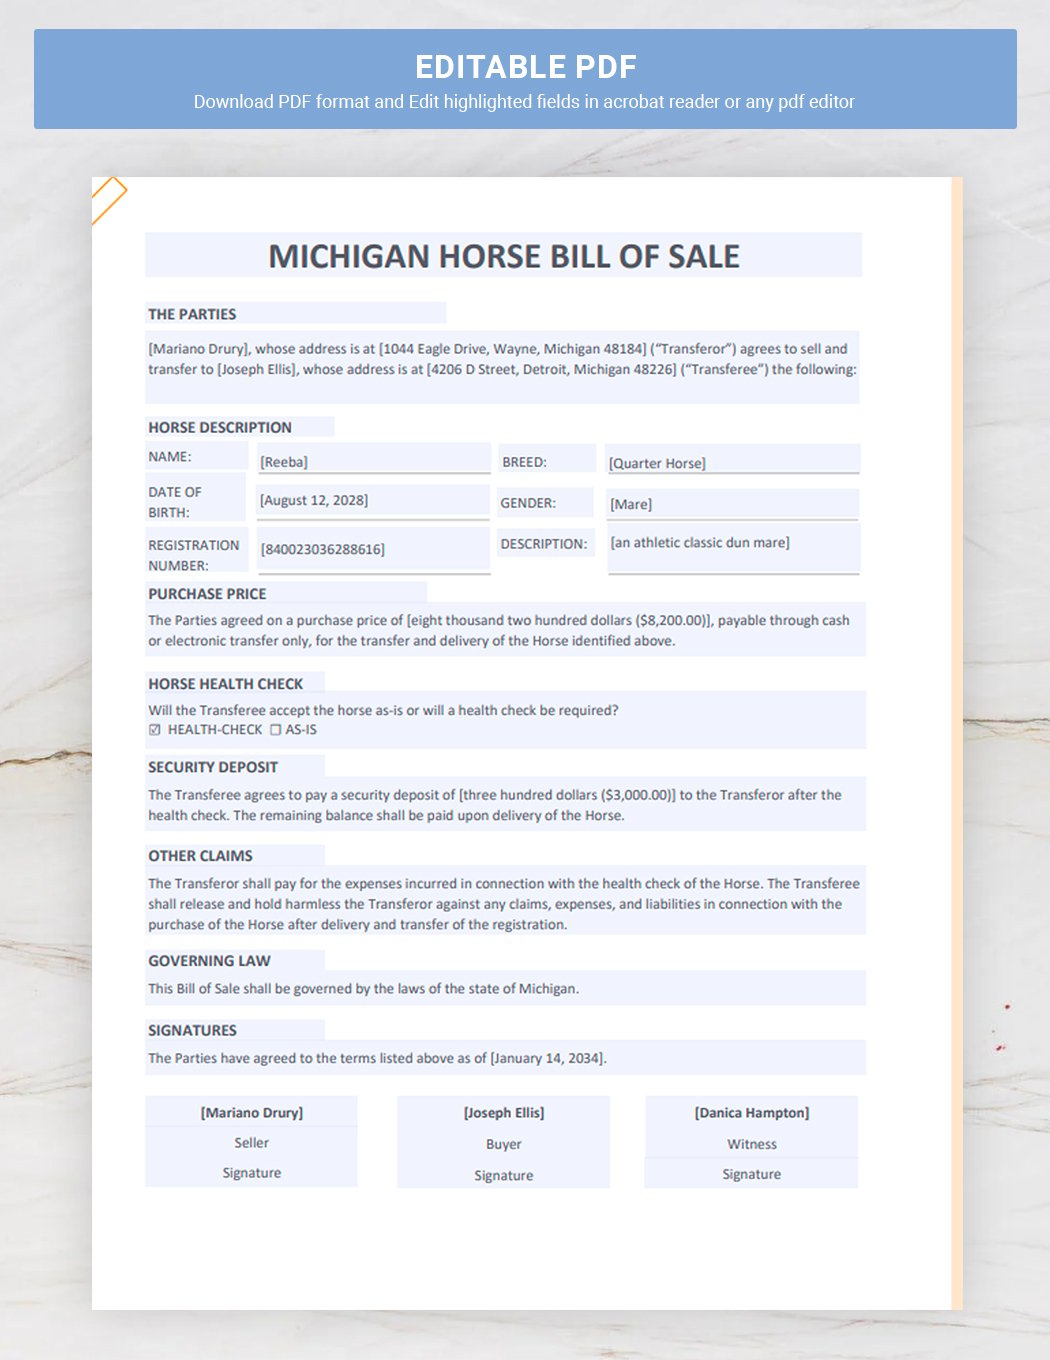 Michigan Horse Bill of Sale Template